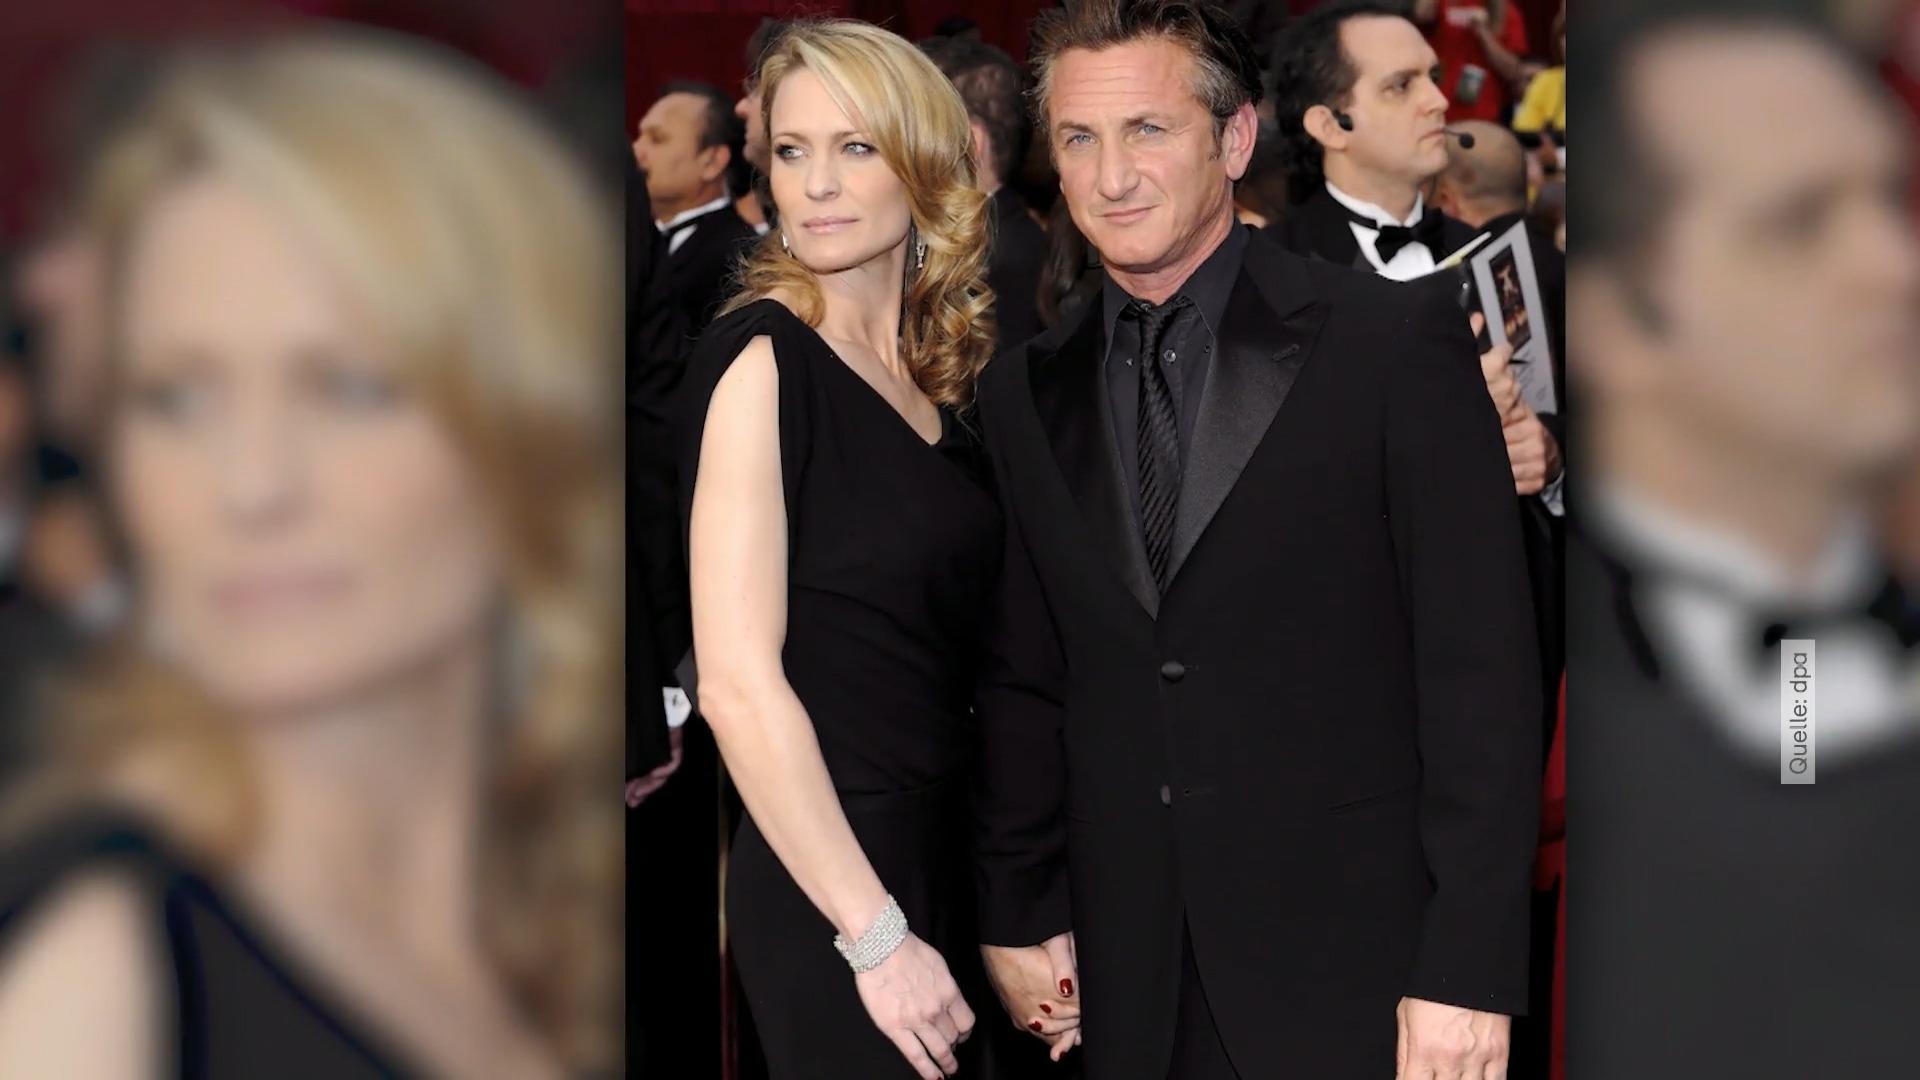 Diese Aufnahmen von Sean Penn und Robin Wright überraschen! Liebescomeback?